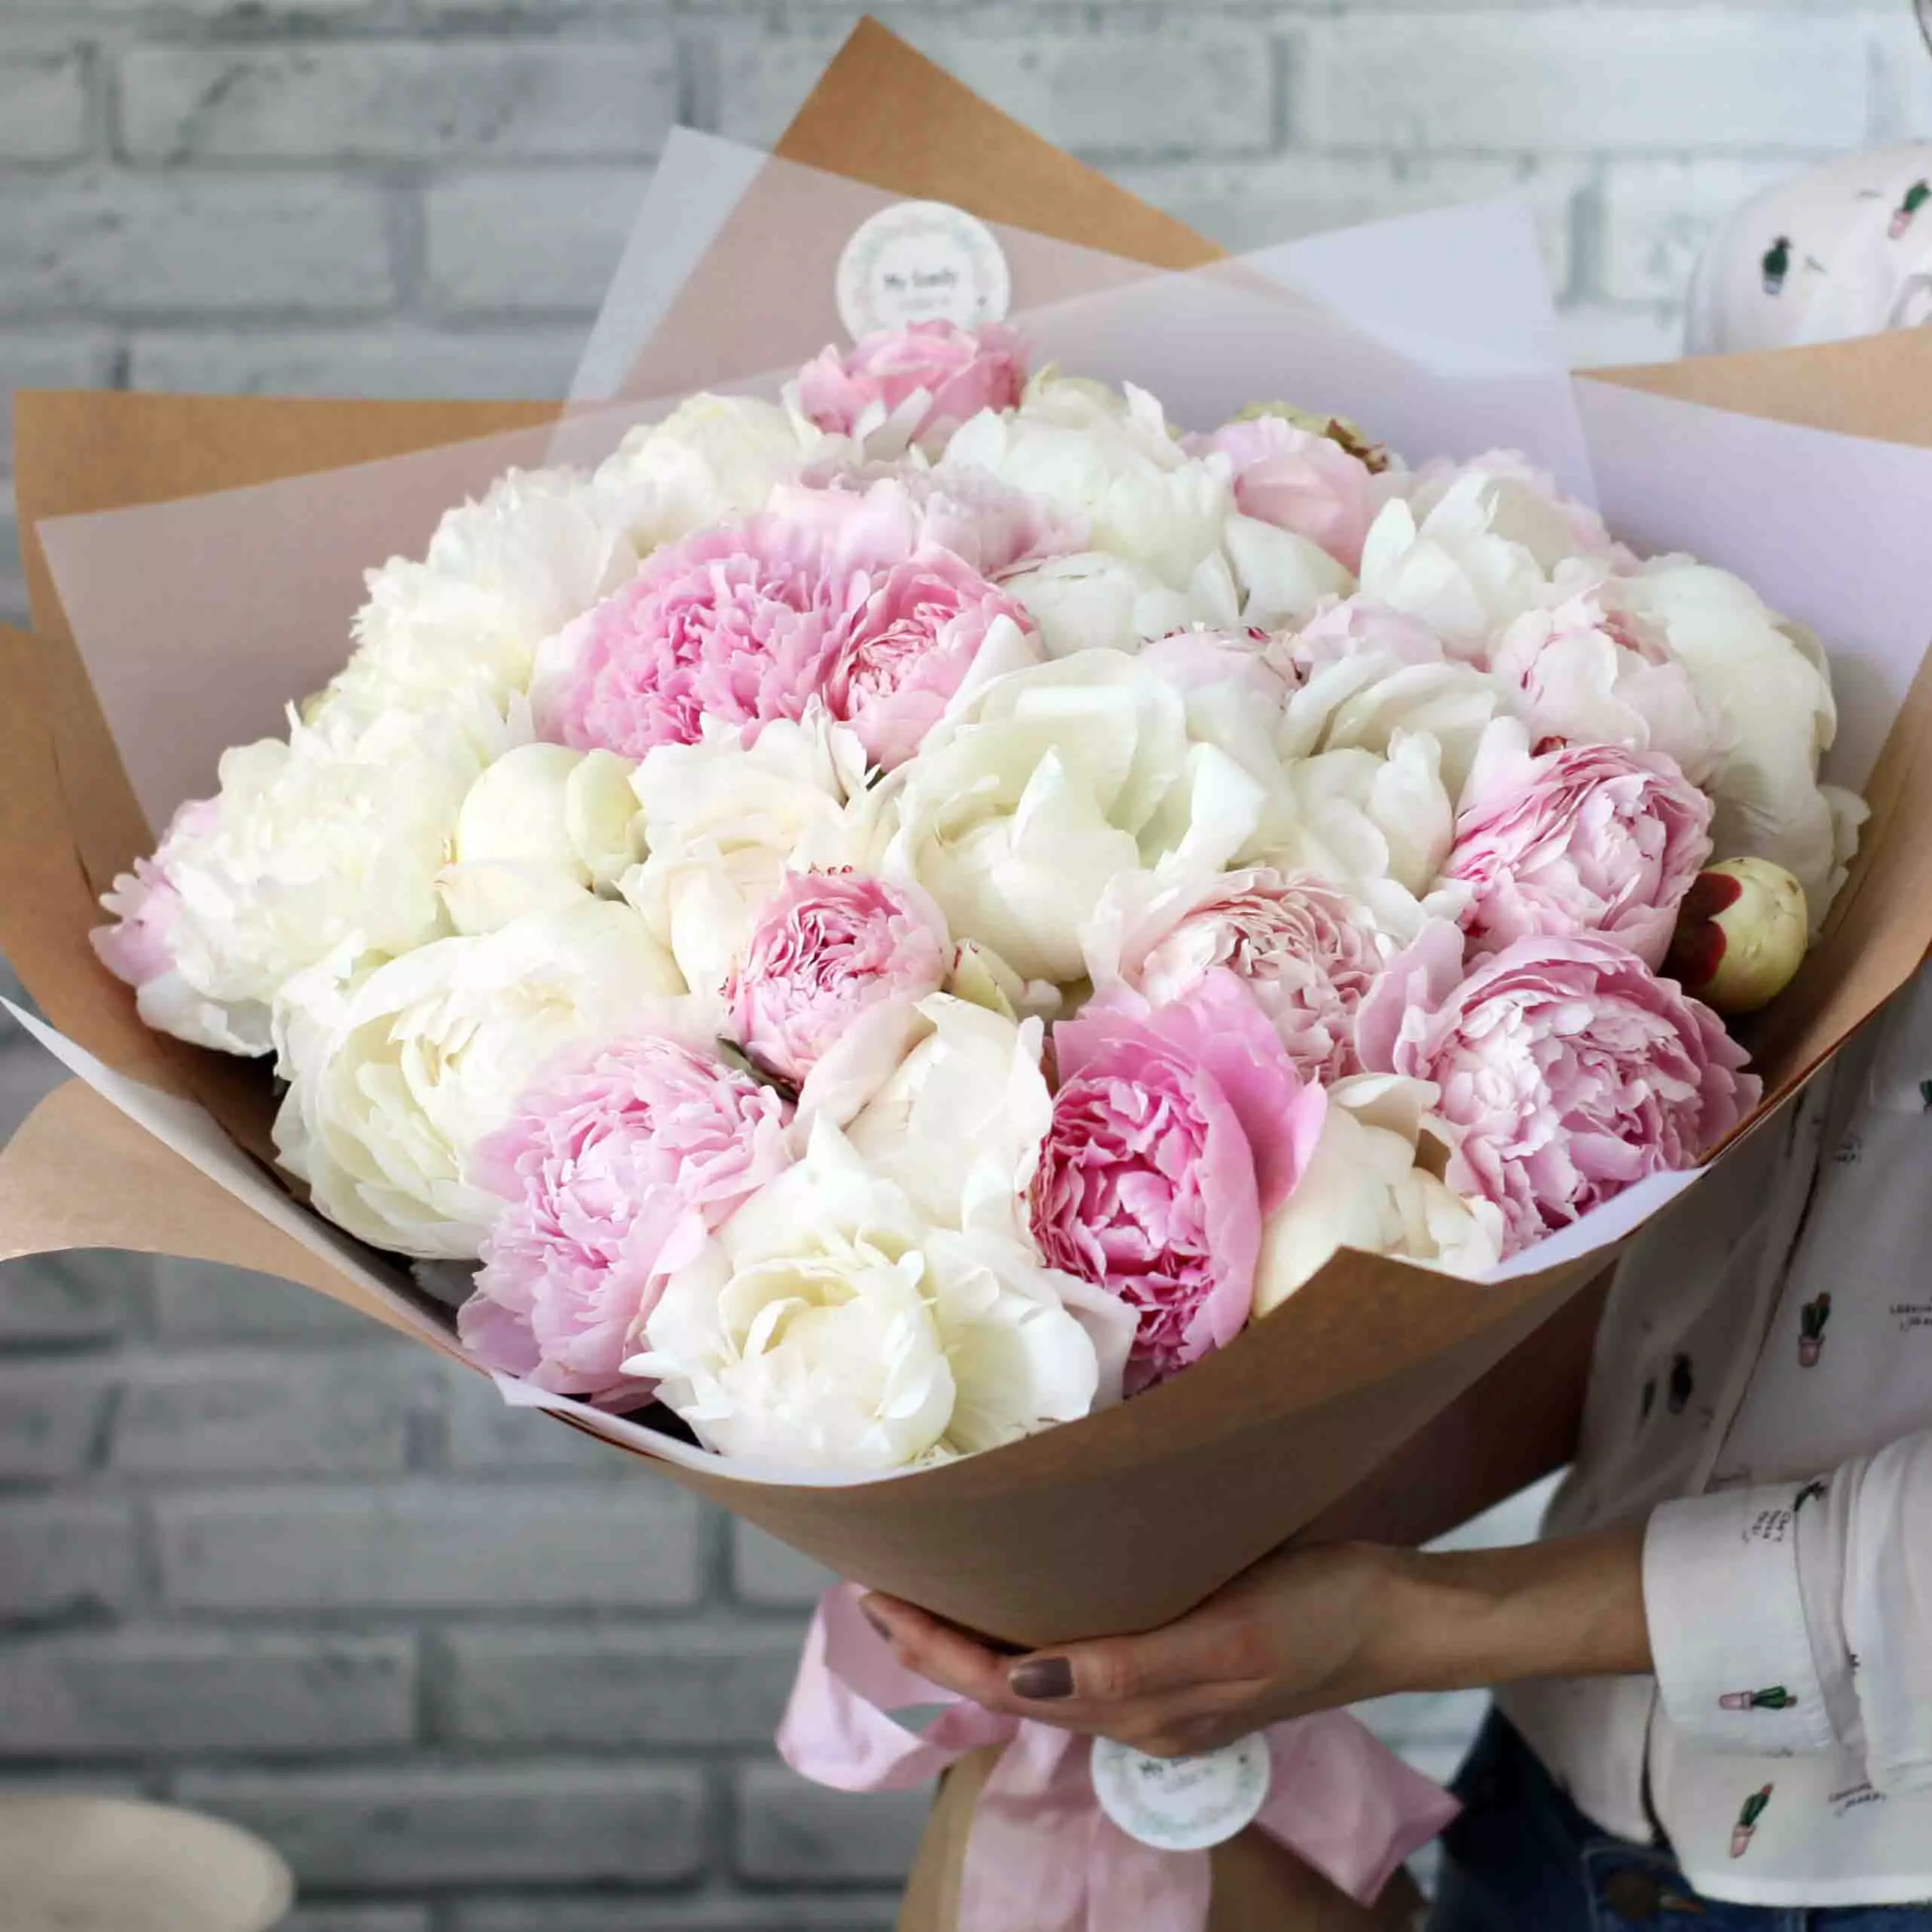 Ինչ ծաղիկներ տալ աղջկա: 34 Լուսանկար, թե քանի վարդ կարող եք տալ: Որն է ավելի լավ `զամբյուղի մեջ փակ ծաղիկ կամ գեղեցիկ ծաղկեփնջ: 18667_9